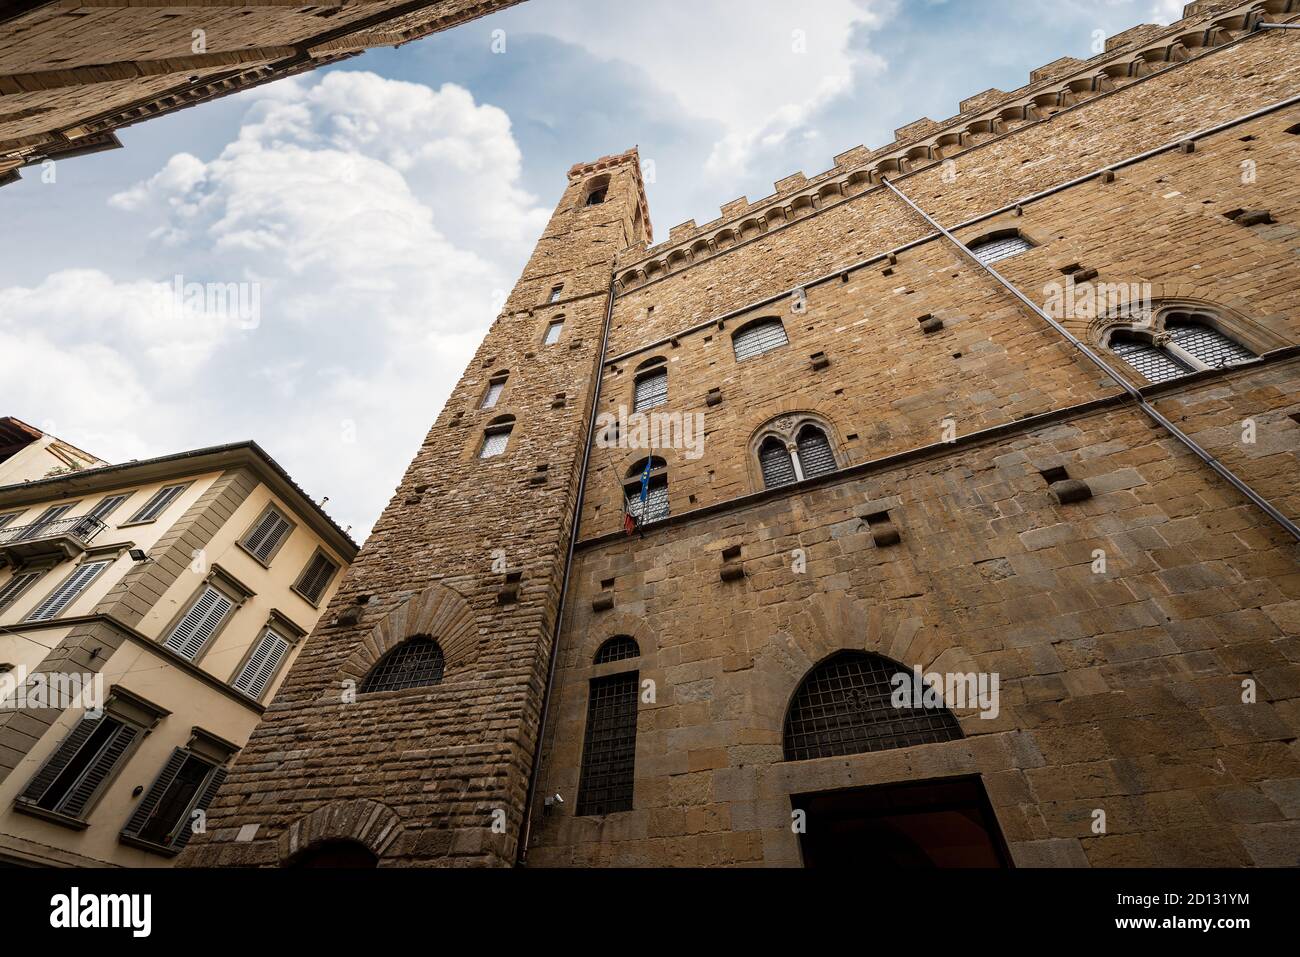 Palazzo del Bargello medievale (Palazzo del Bargello) nel centro di Firenze, patrimonio dell'umanità dell'UNESCO, Toscana, Italia, Europa. Foto Stock